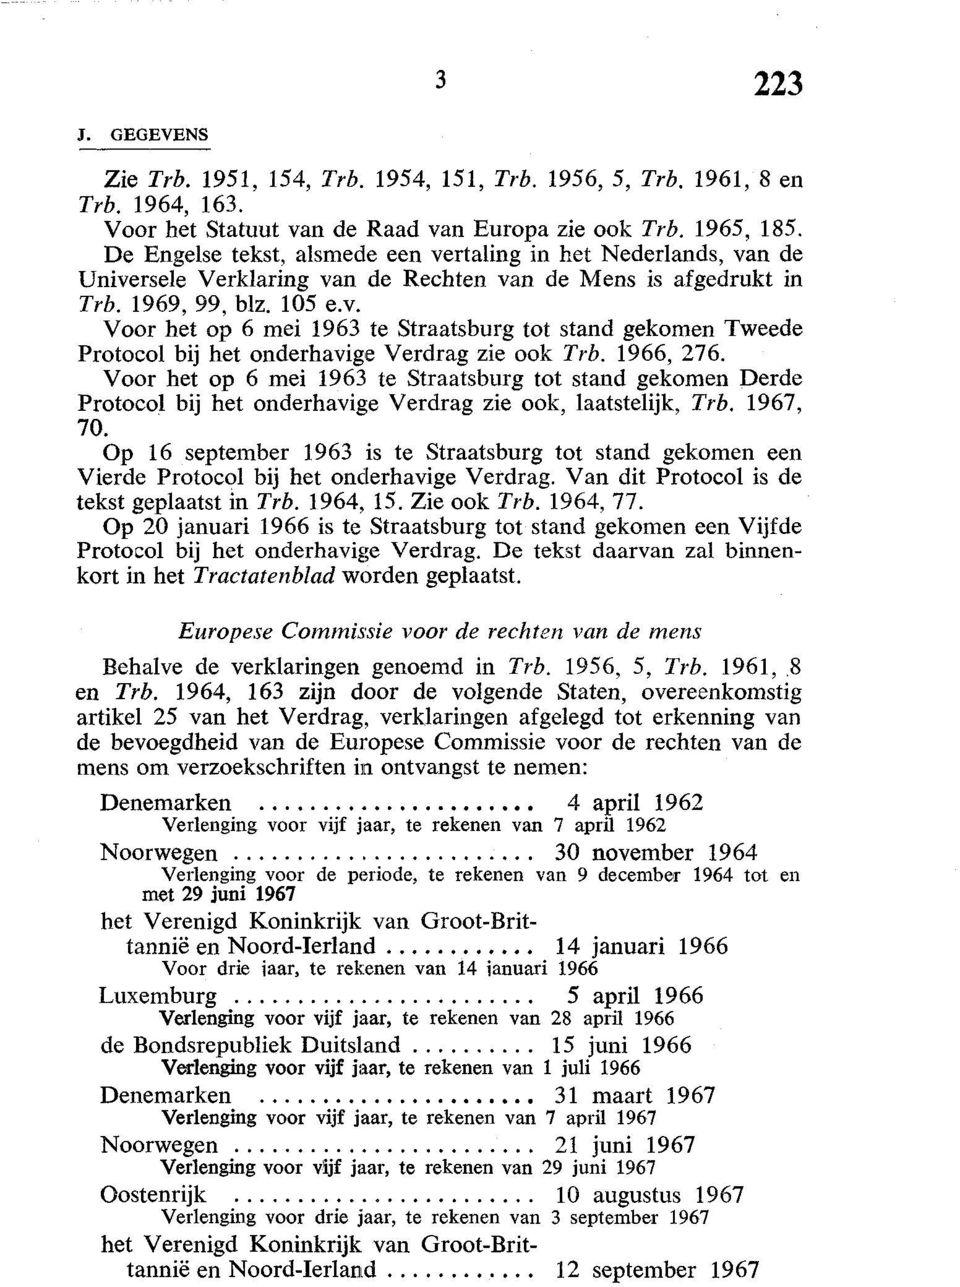 1966, 276. Voor het op 6 mei 1963 te Straatsburg tot stand gekomen Derde Protocol bij het onderhavige Verdrag zie ook, laatstelijk, Trb.